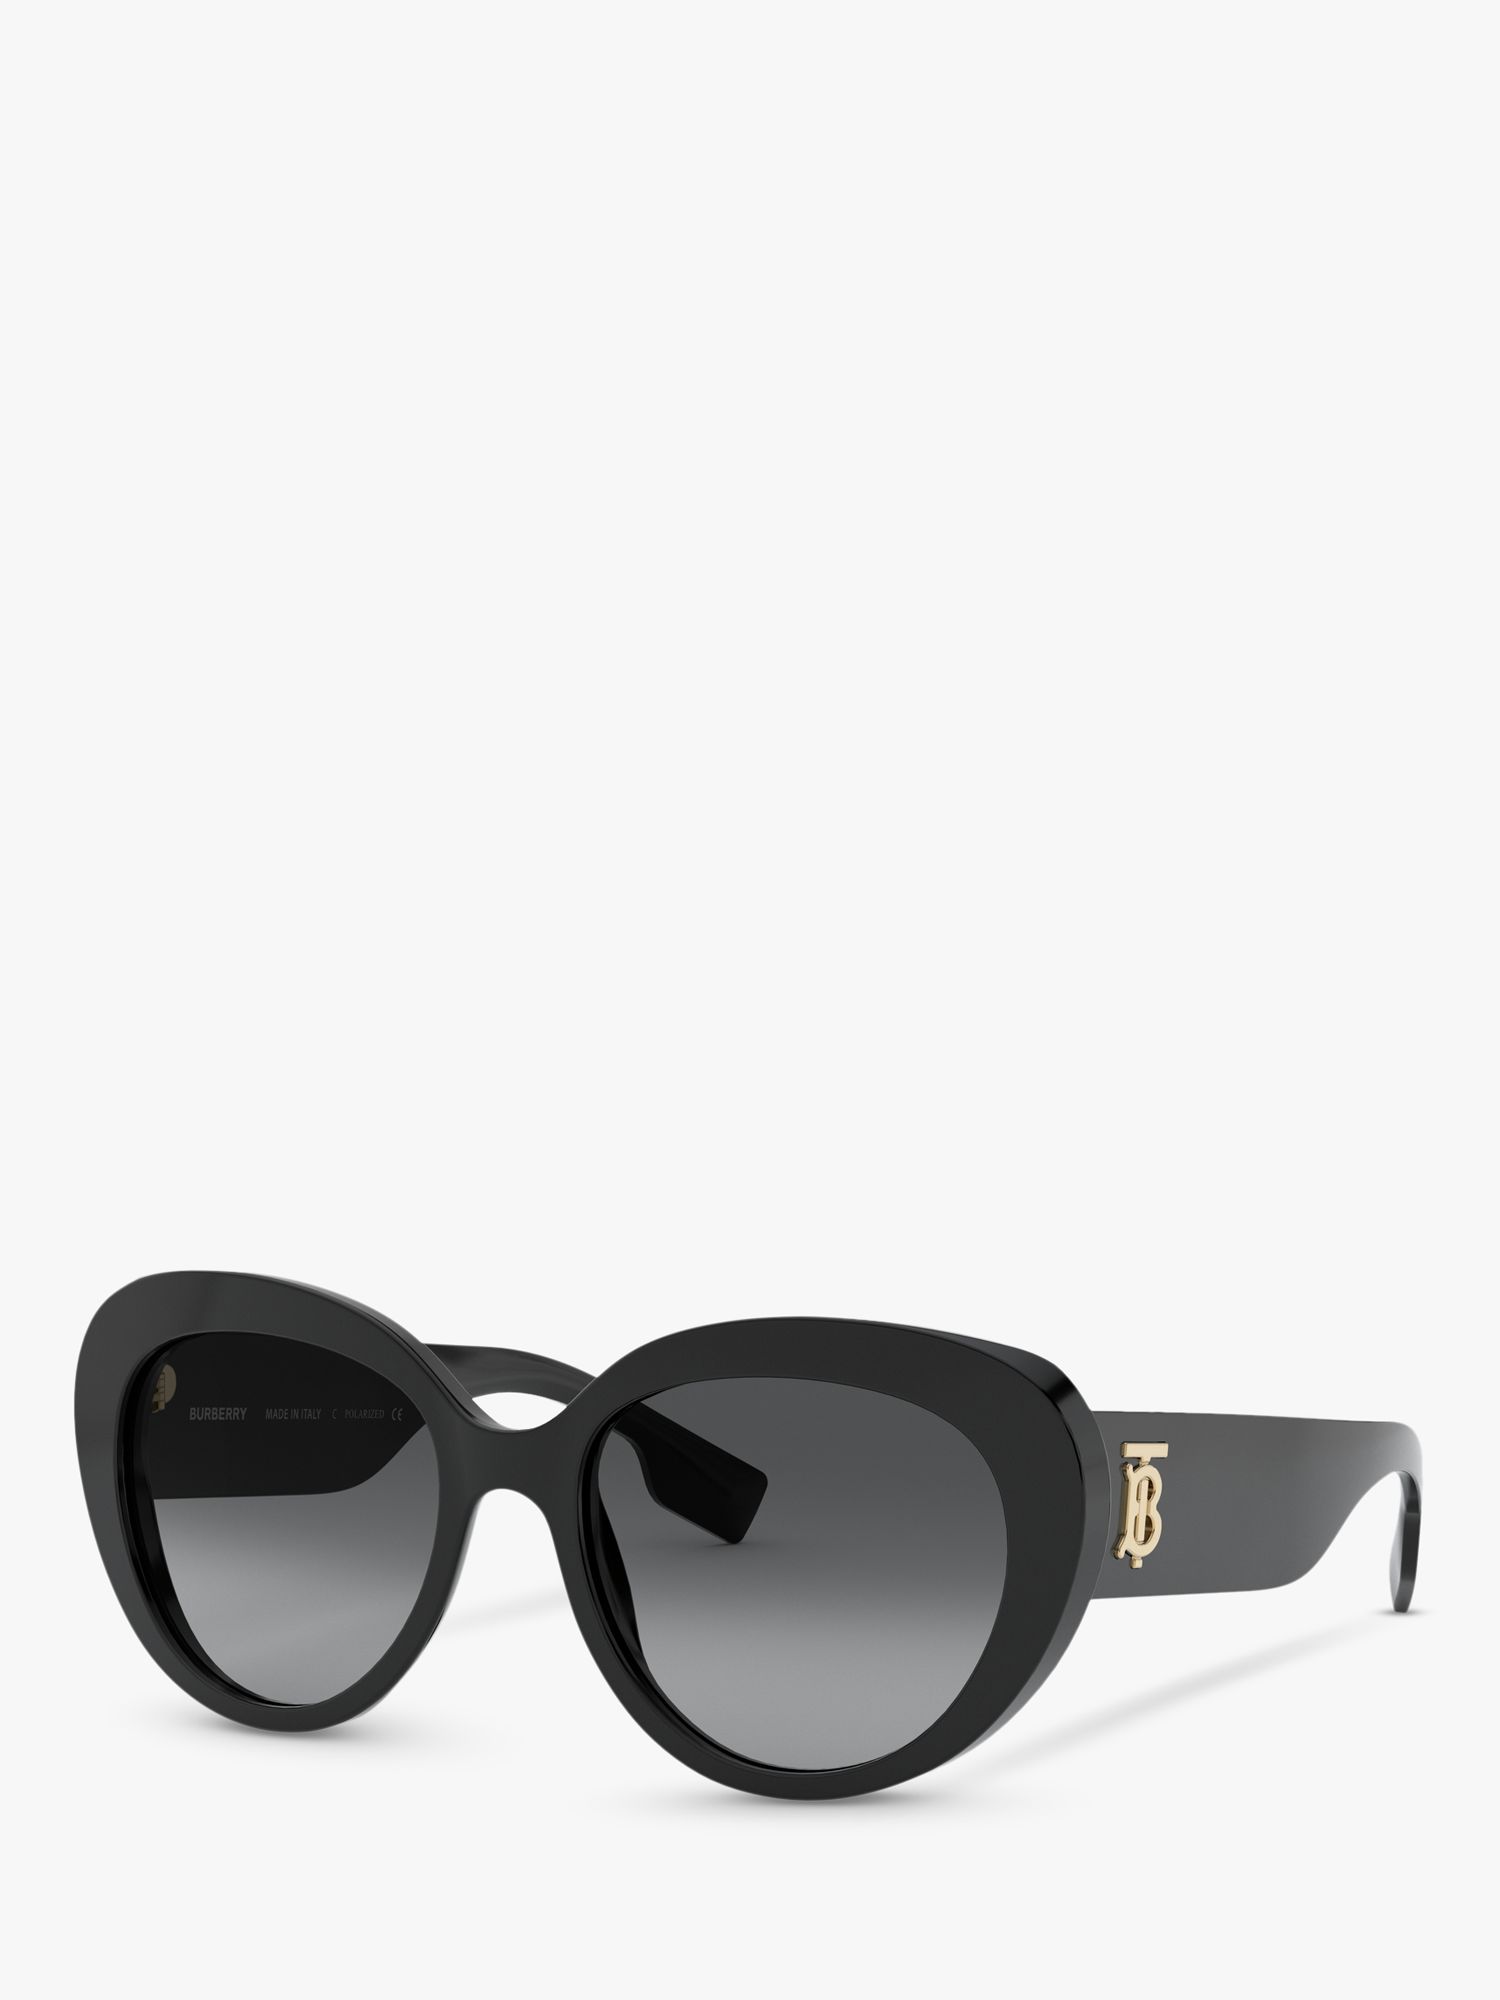 womens burberry sunglasses